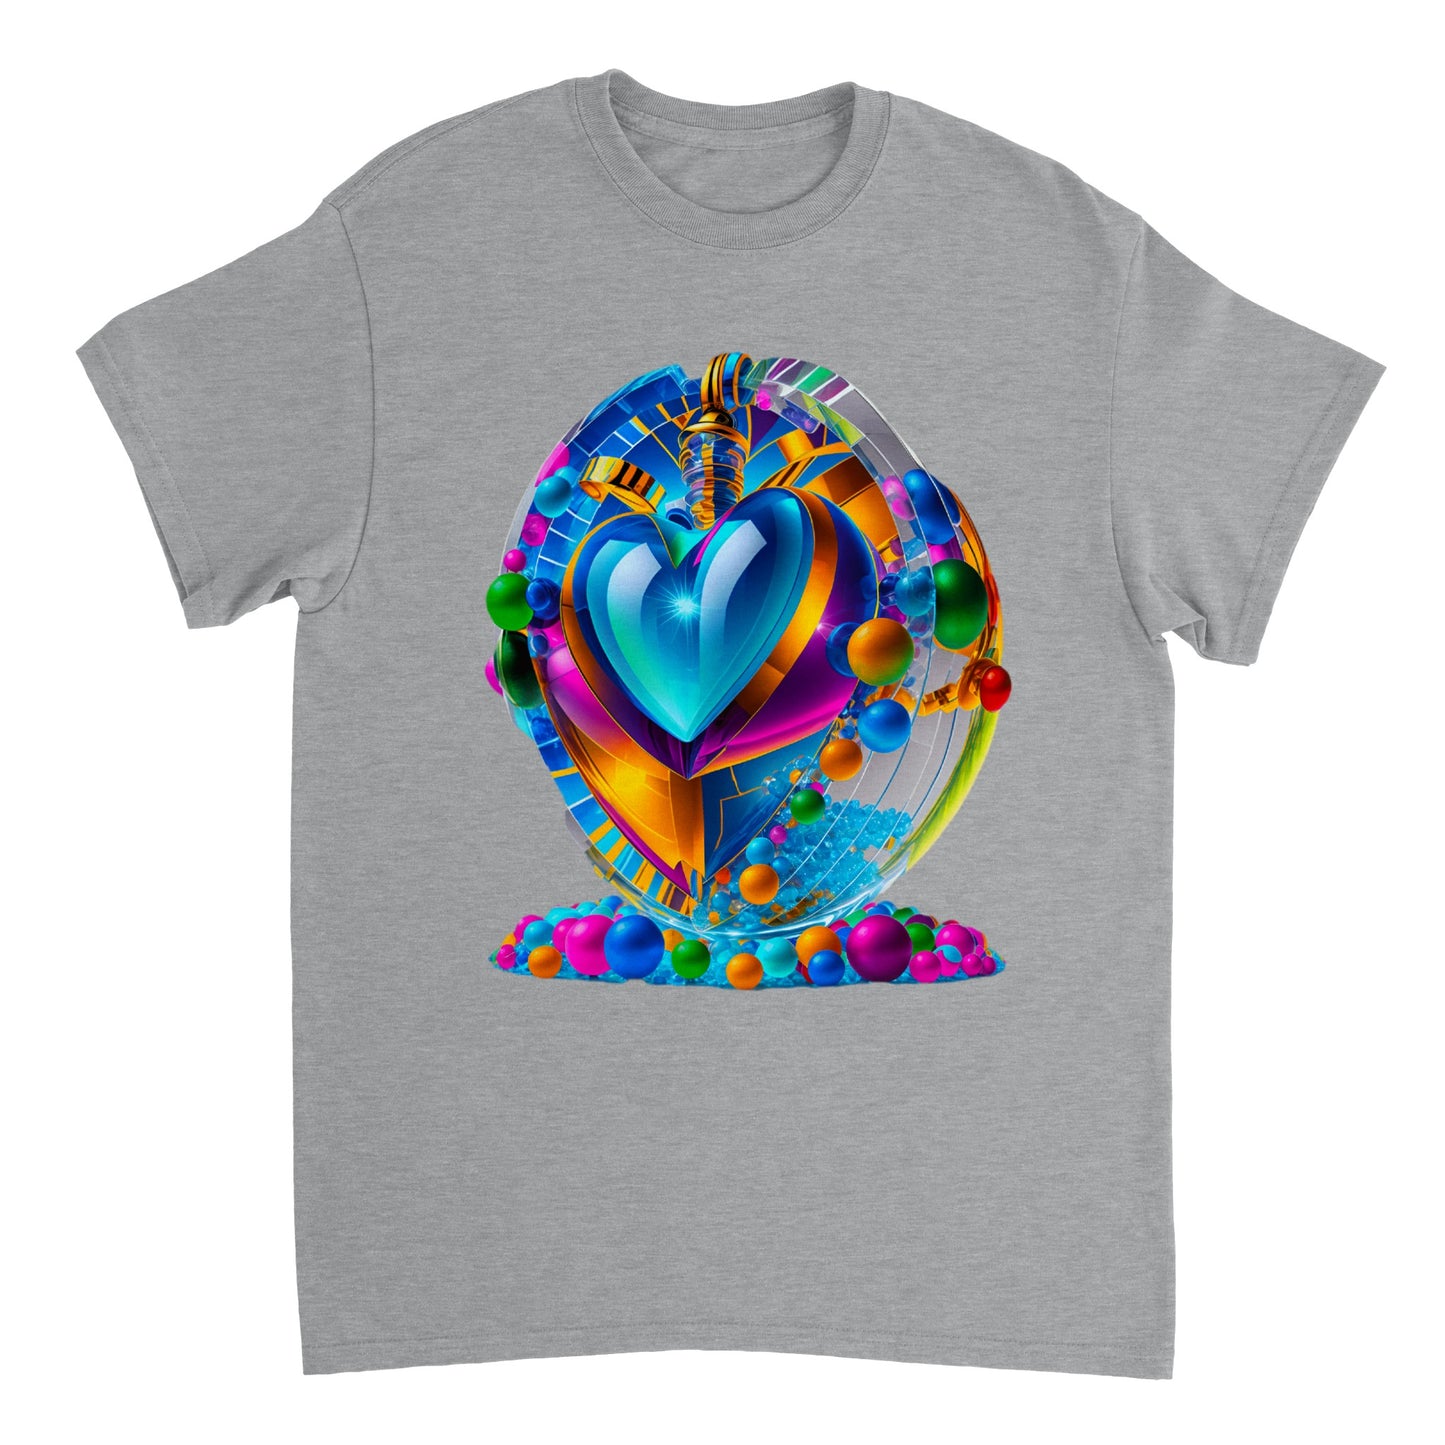 Love Heart - Heavyweight Unisex Crewneck T-shirt 42